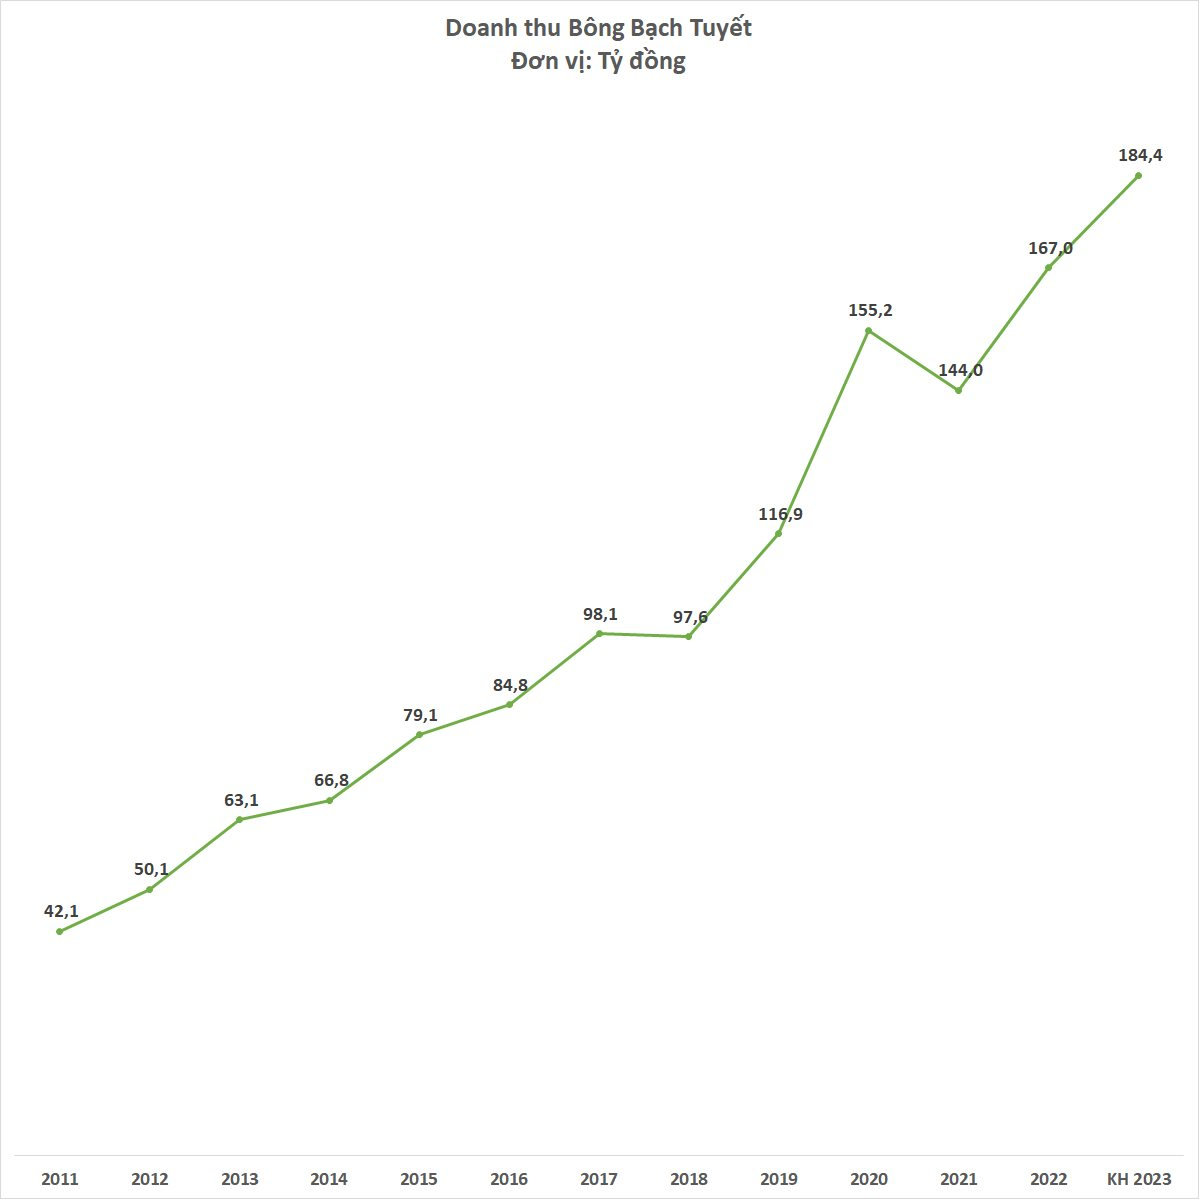 Thương hiệu hơn 60 năm tuổi Bông Bạch Tuyết đặt mục tiêu lợi nhuận tăng hơn 3 lần năm 2023, doanh thu cao kỷ lục - Ảnh 2.